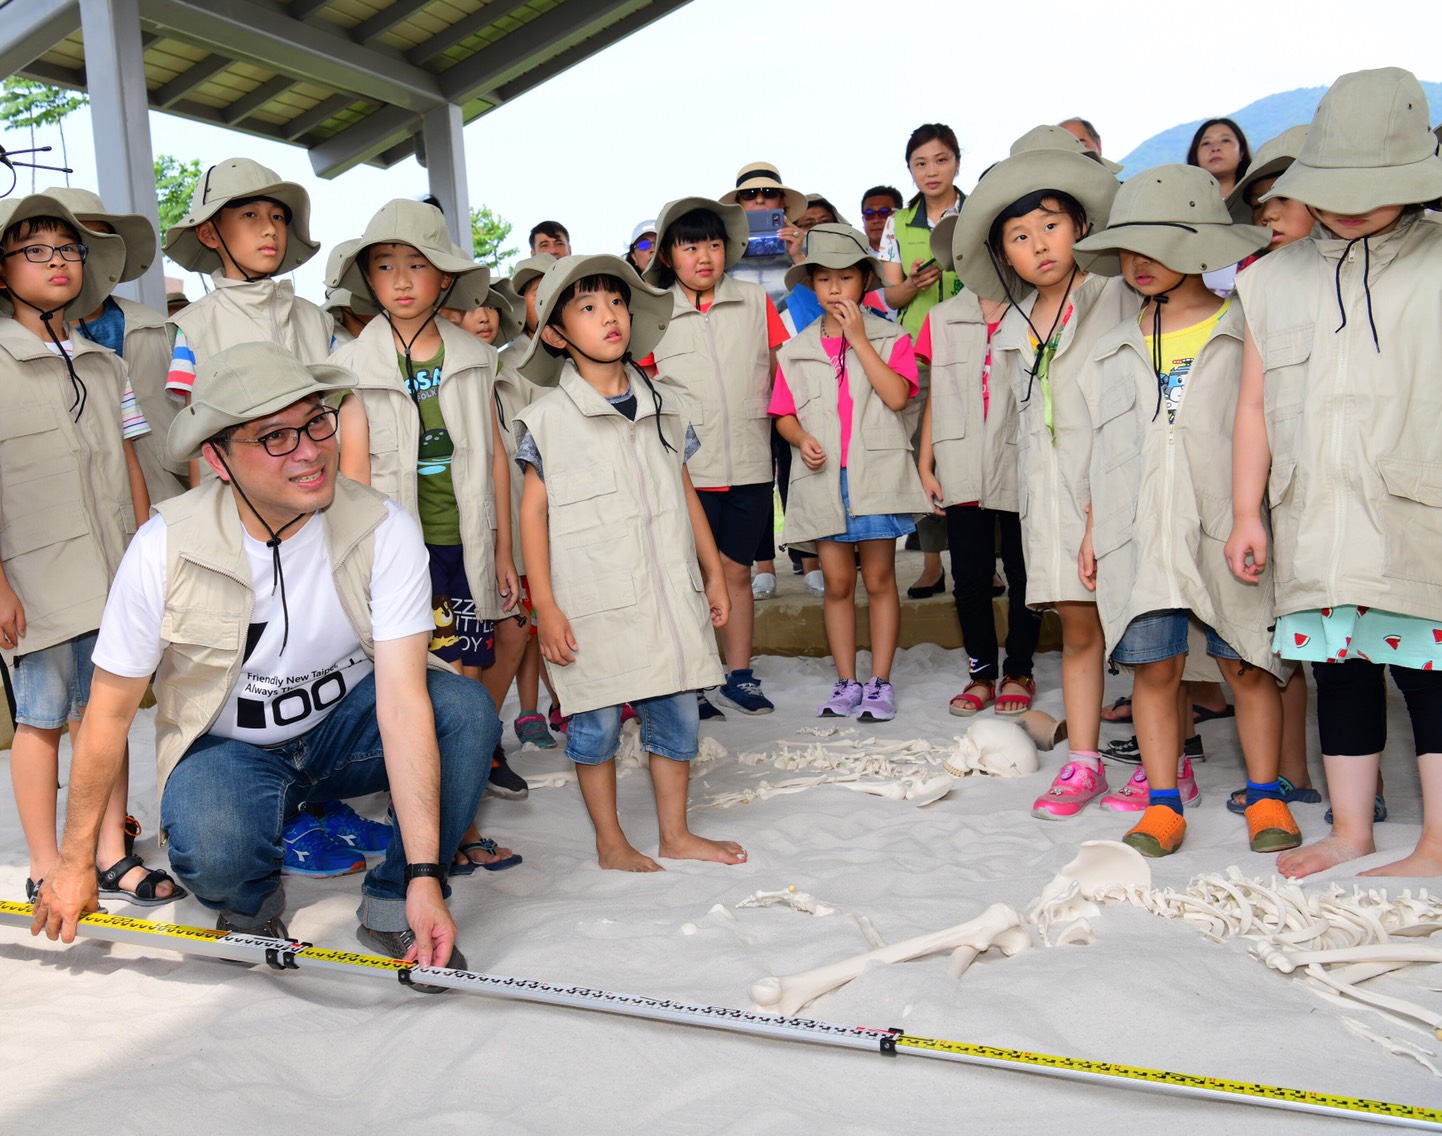 吳明機副市長在全臺最大考古體驗探坑與小小考古學家體驗挖掘樂趣